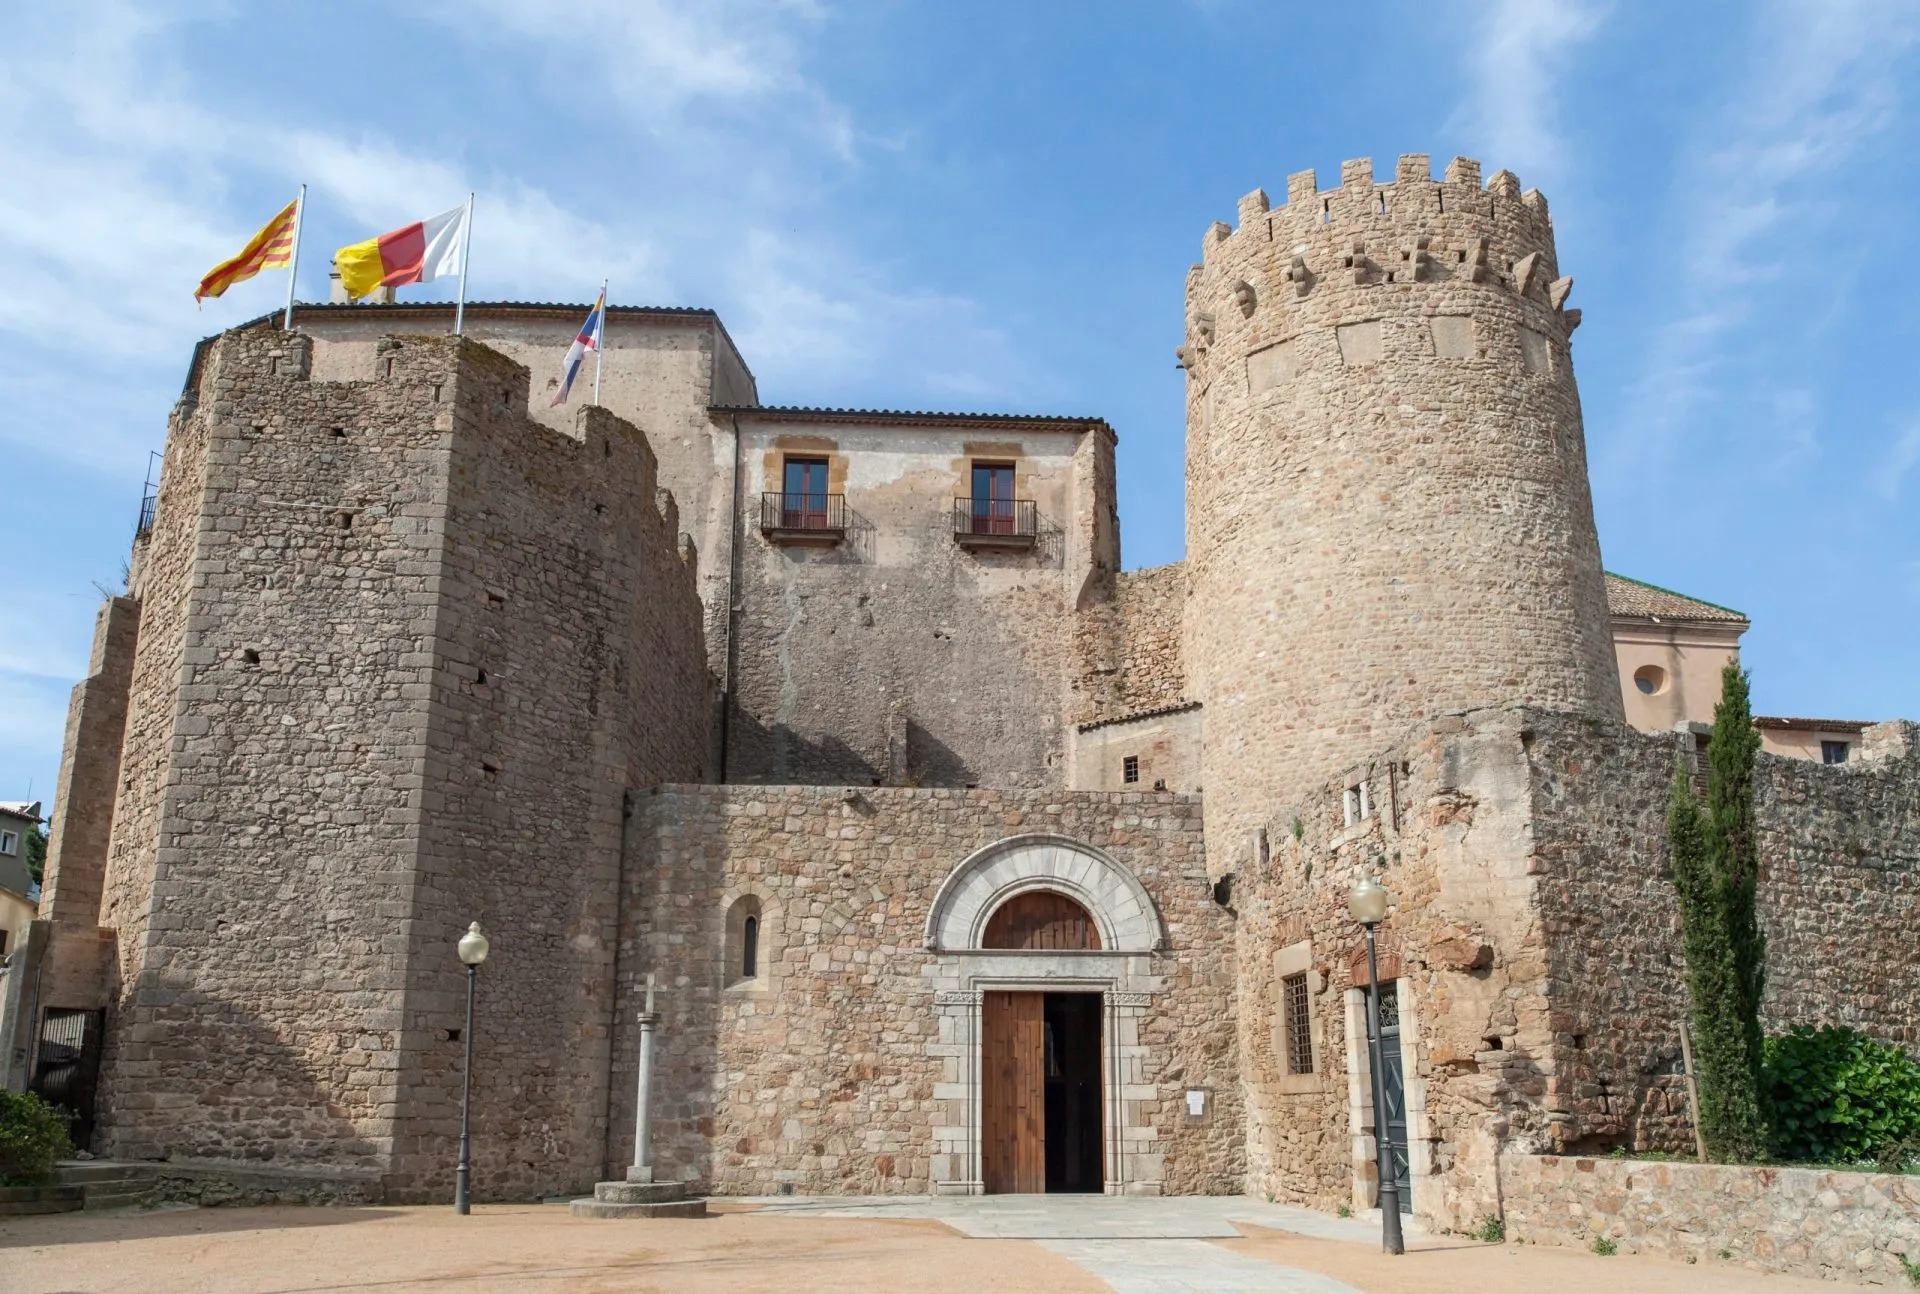 Benediktinerkloster, medeltida byggnad, Sant Feliu de Guixols, Costa Brava, Girona-provinsen, Katalonien,Spanien.